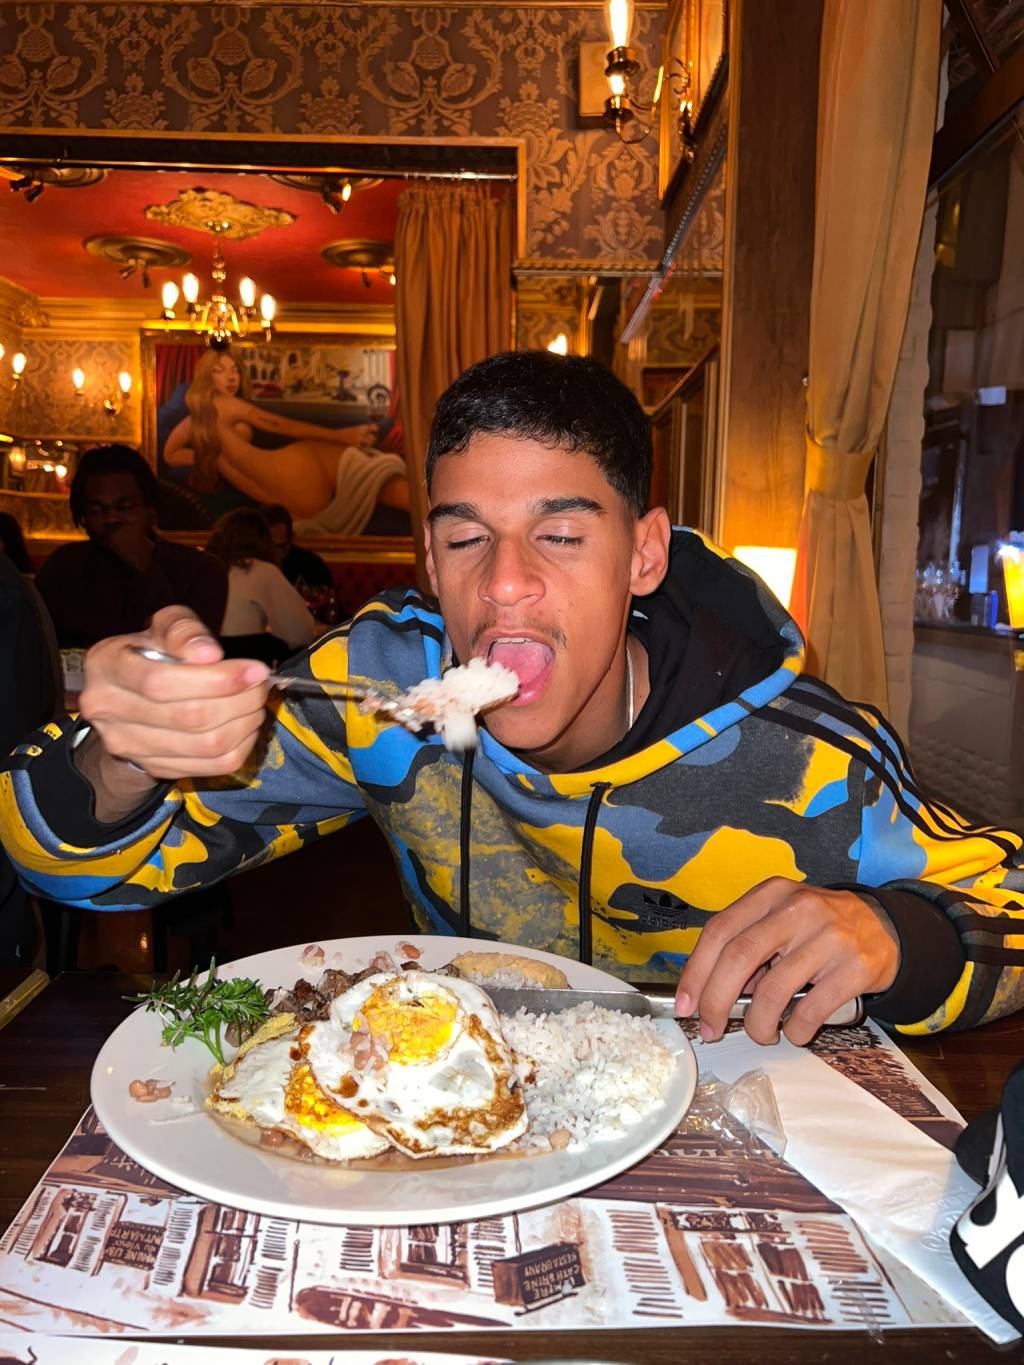 Luva de Pedreiro posa levando pedaço de comida à boca no restaurante Paris 6. À sua frente, prato com arroz, feijão e ovo frito